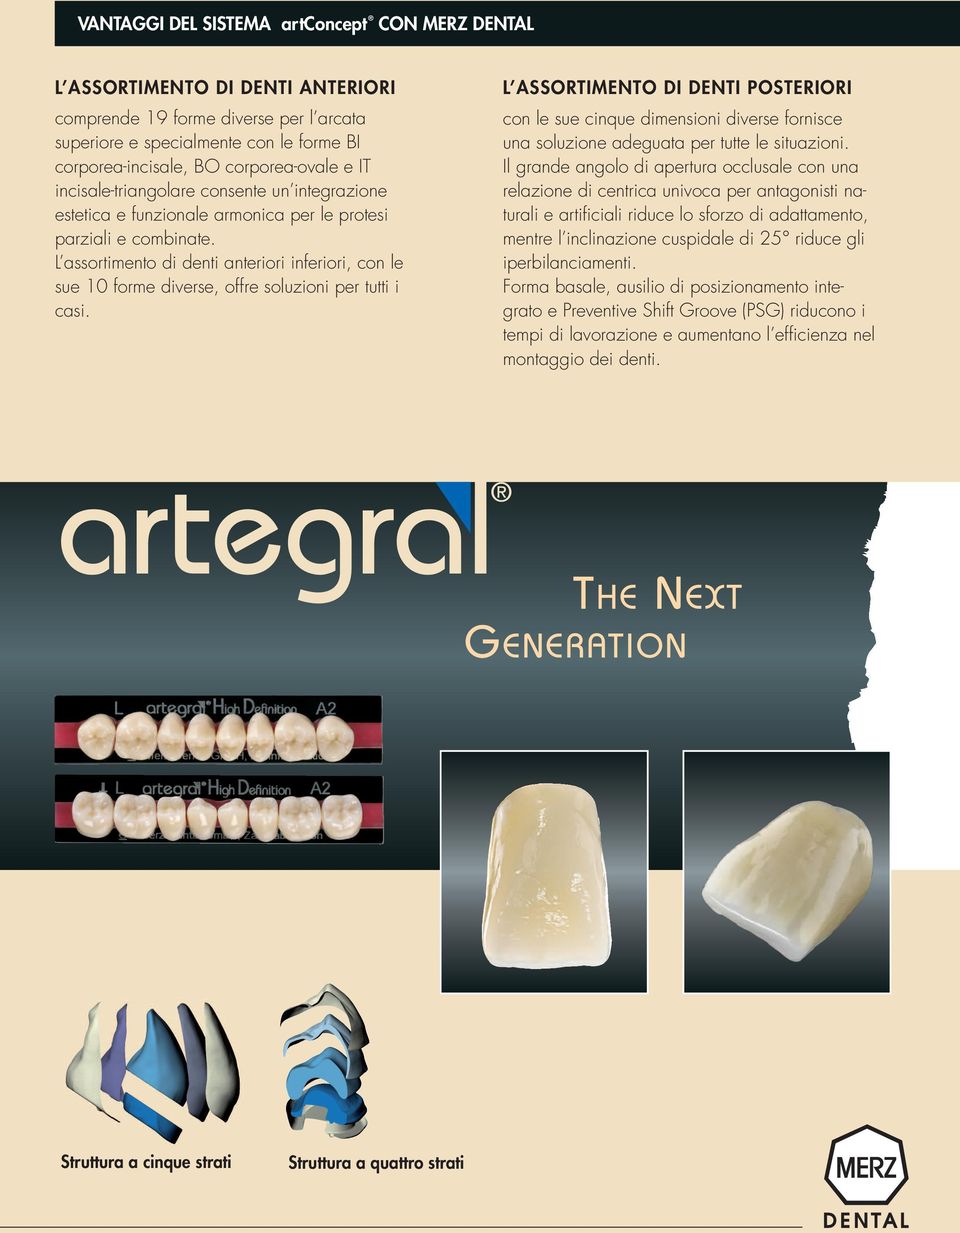 L assortimento di denti anteriori inferiori, con le sue 10 forme diverse, offre soluzioni per tutti i casi.